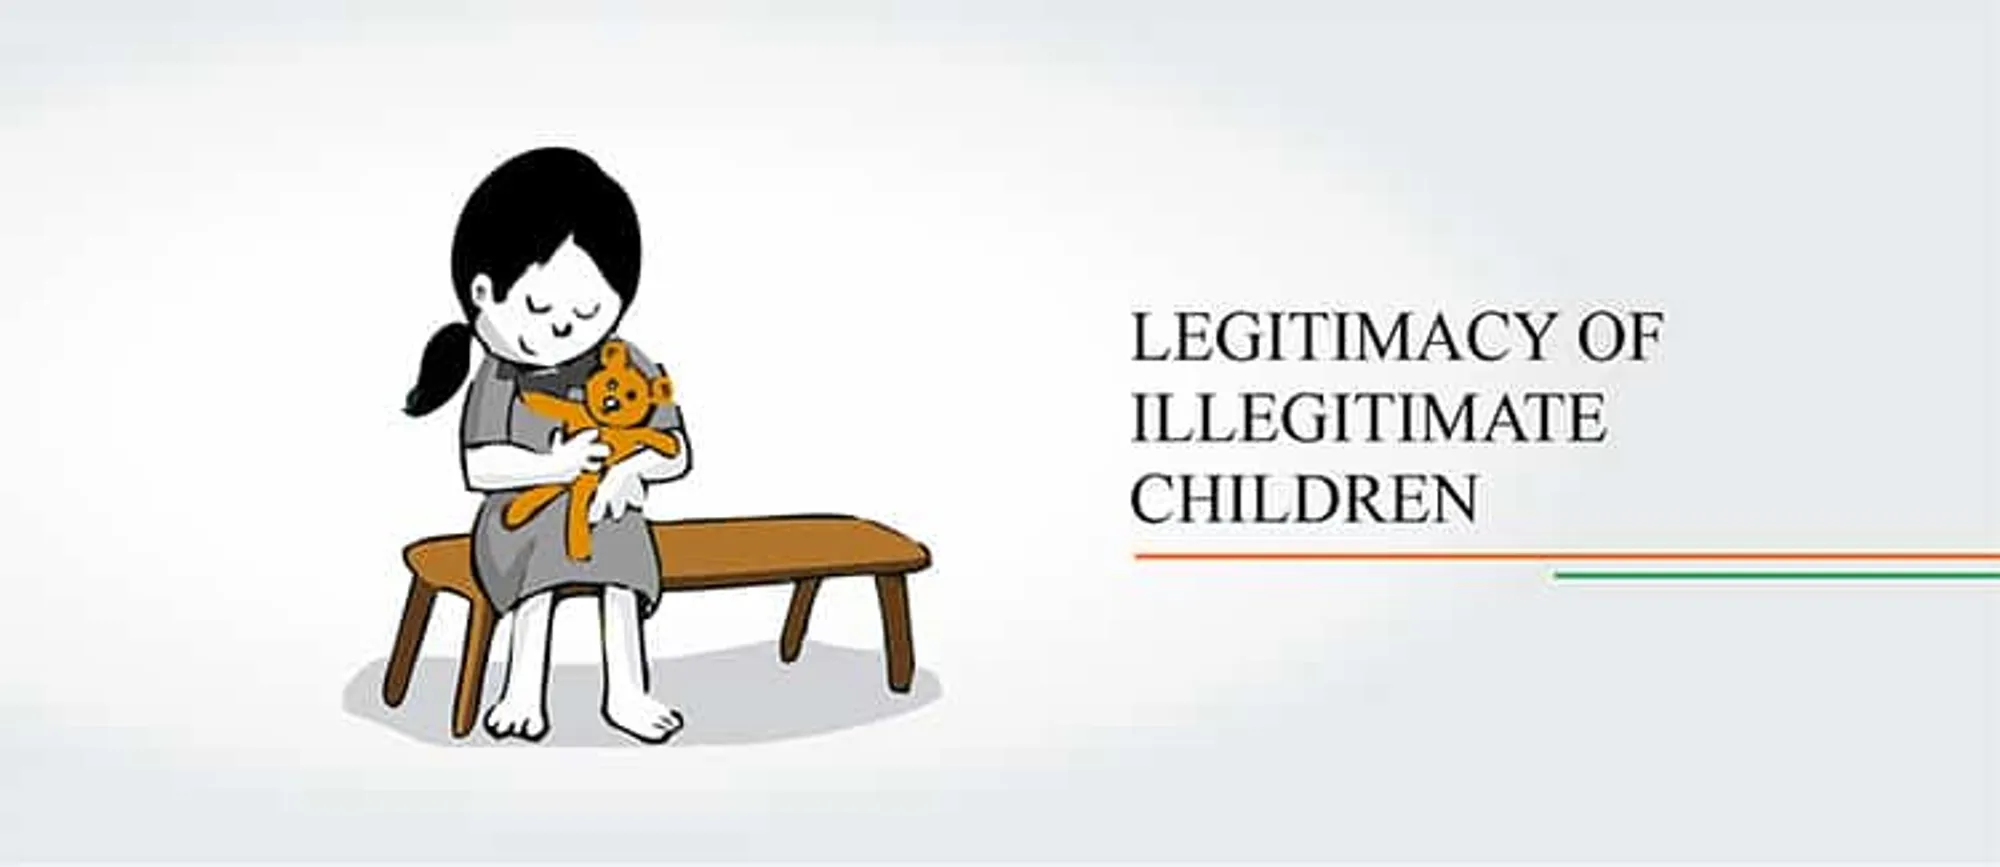 Legitimacy of illegitimate children